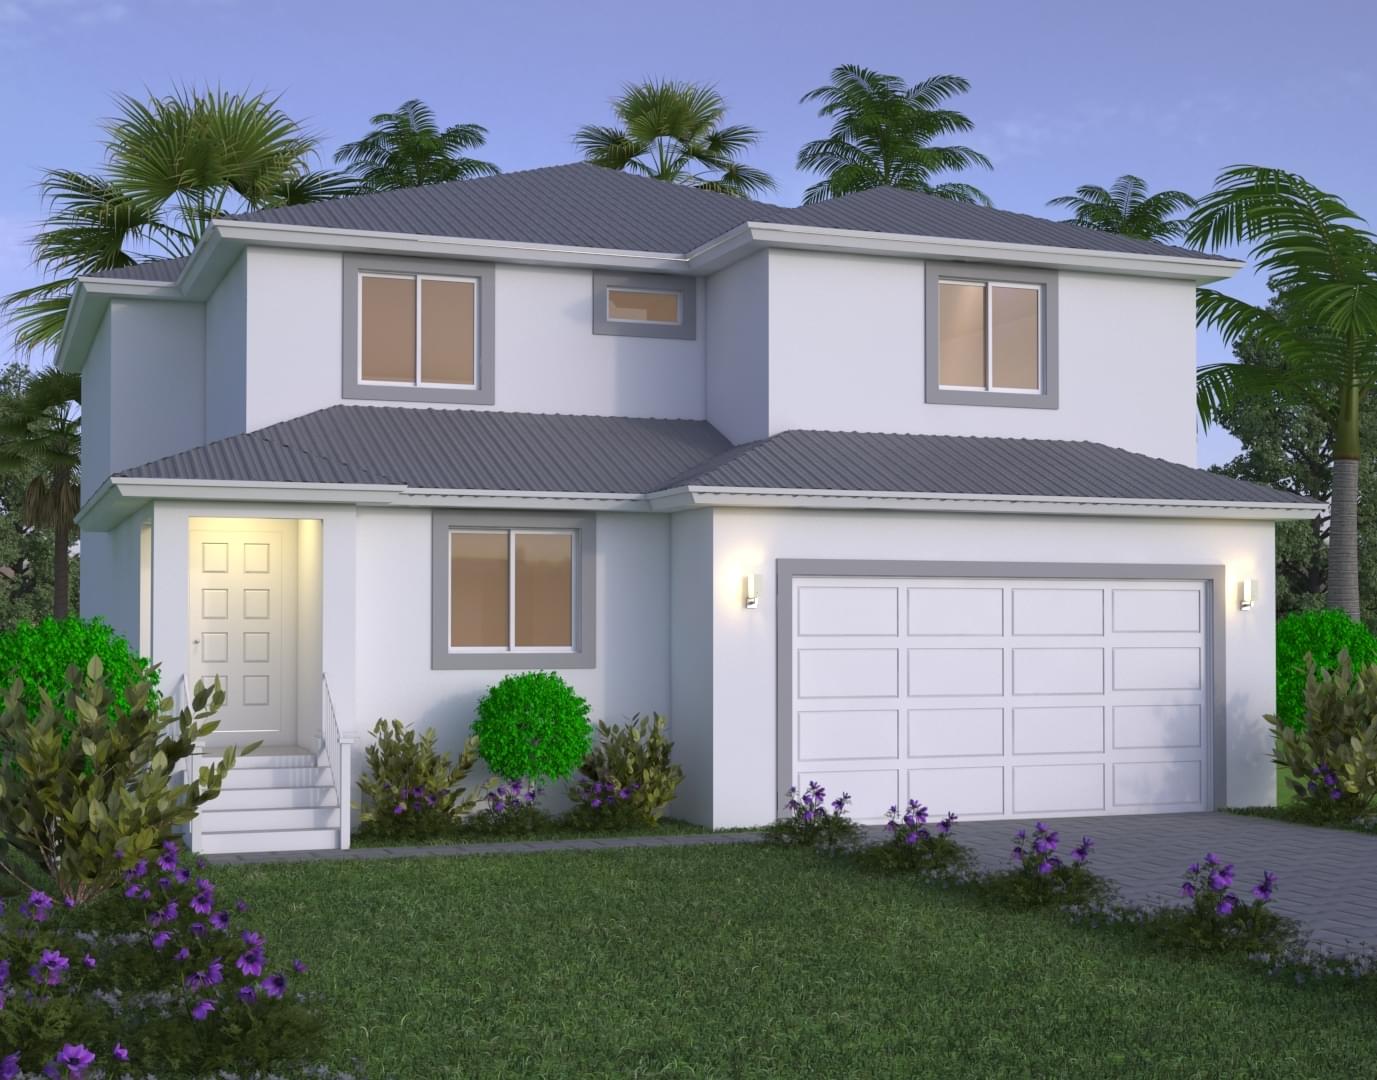 Avantgarde Design Home Builders Florida Saint Lucia Back View